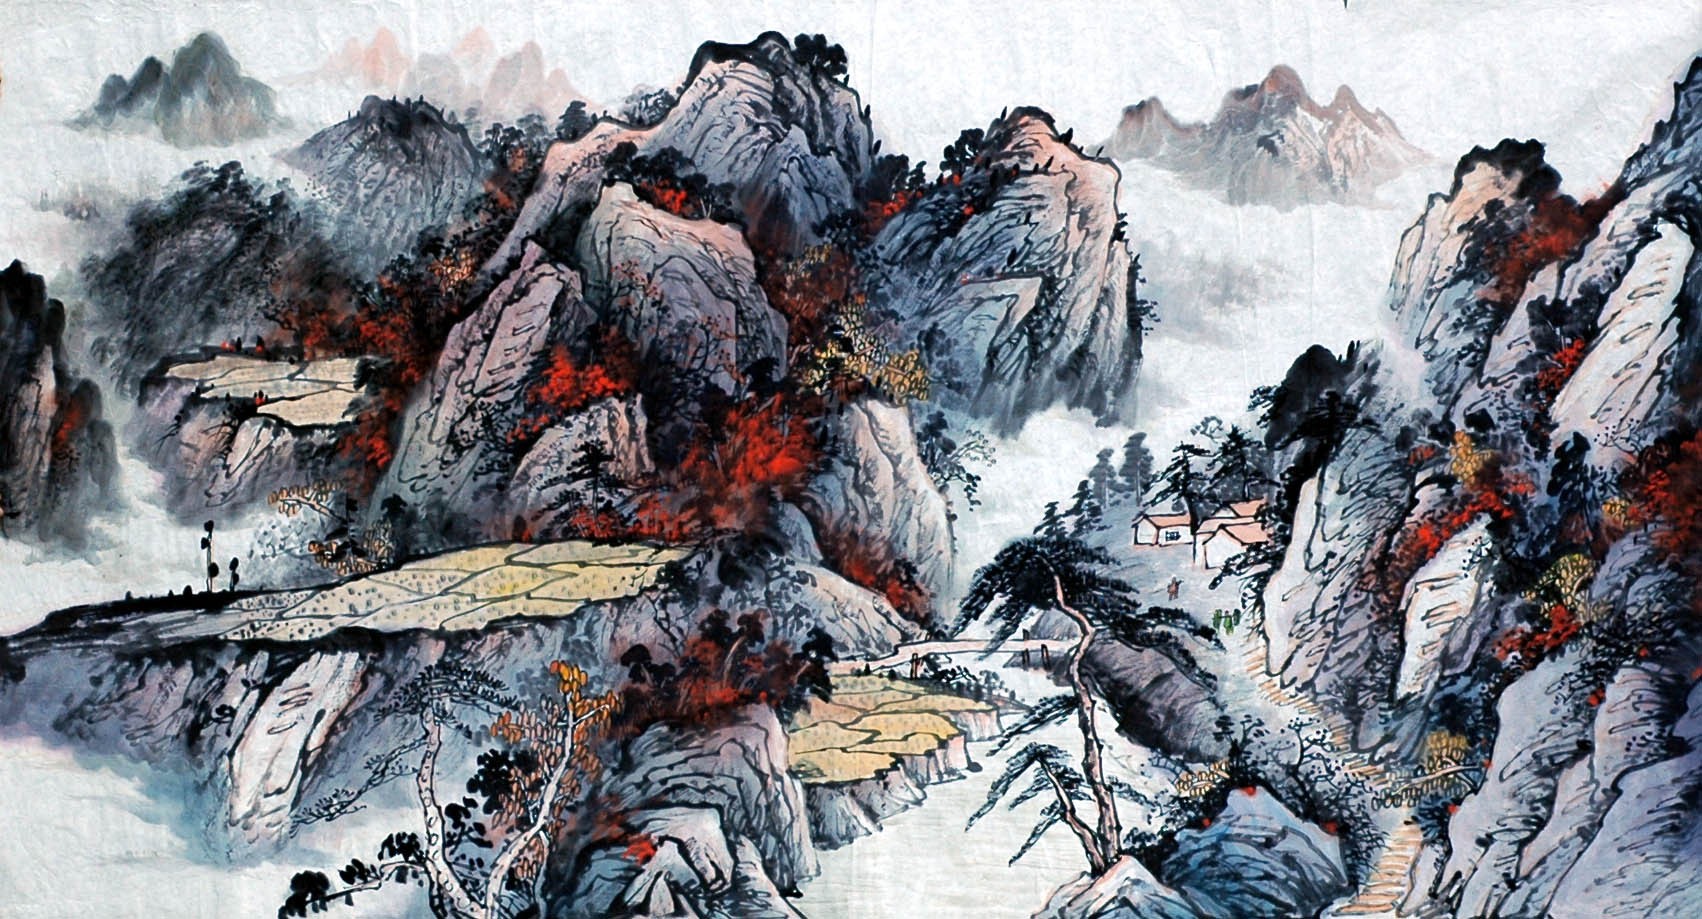 Chinese Landscape Painting - CNAG008508